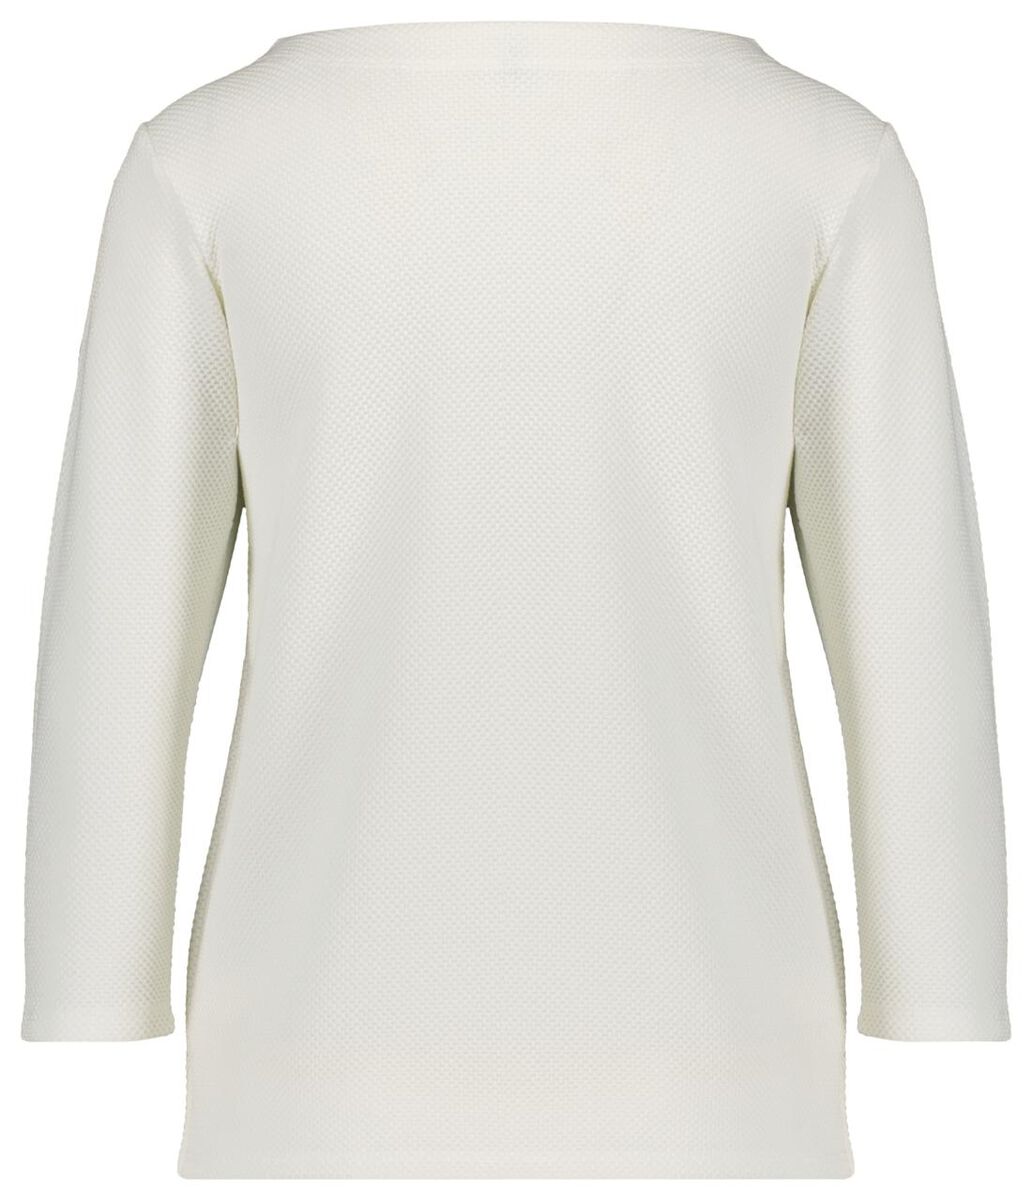 t-shirt femme relief blanc cassé S - 36289657 - HEMA